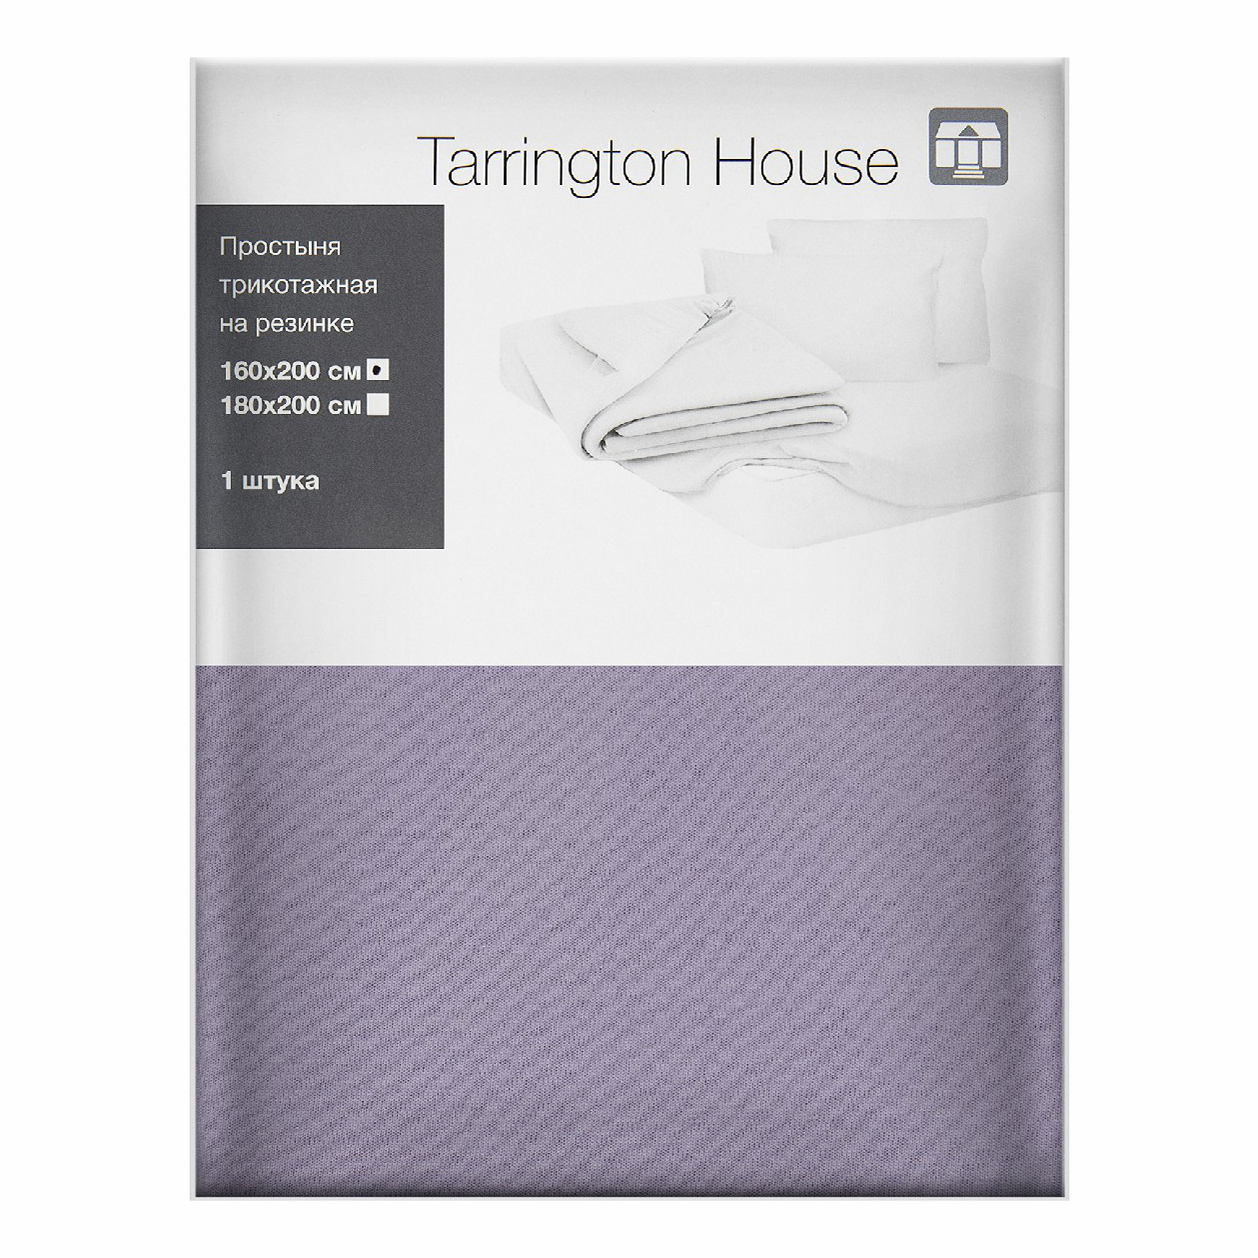 Простыня Tarrington House полутораспальная текстиль 160 x 200 см лиловая